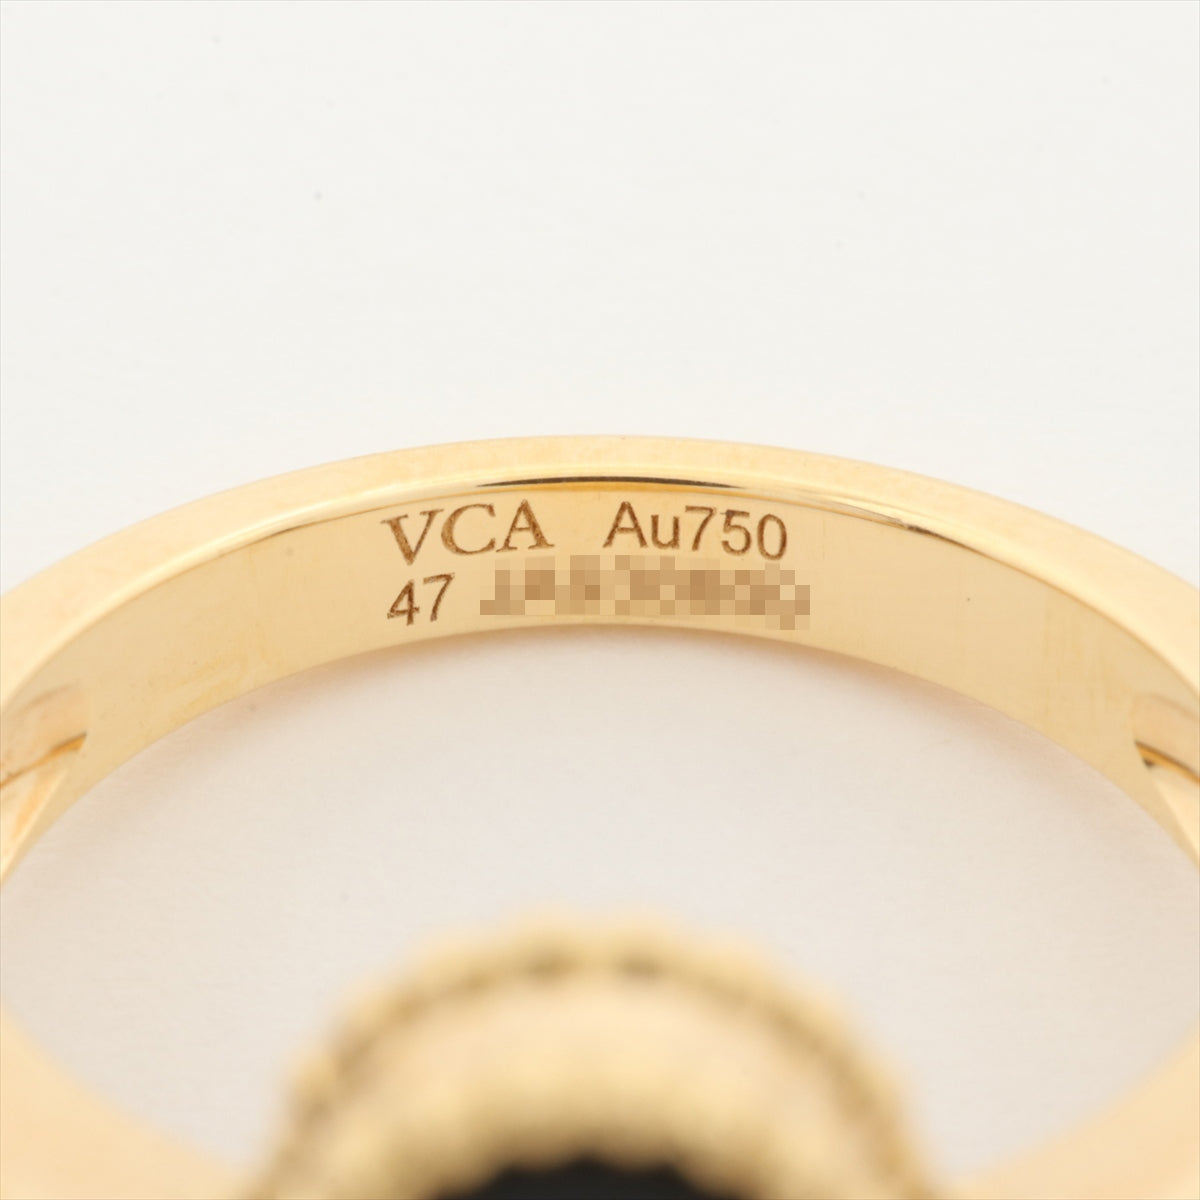 ヴァンクリーフ&アーペル ヴィンテージアルハンブラ オニキス ダイヤ リング 750(YG) 6.6g 47 VCARA41047